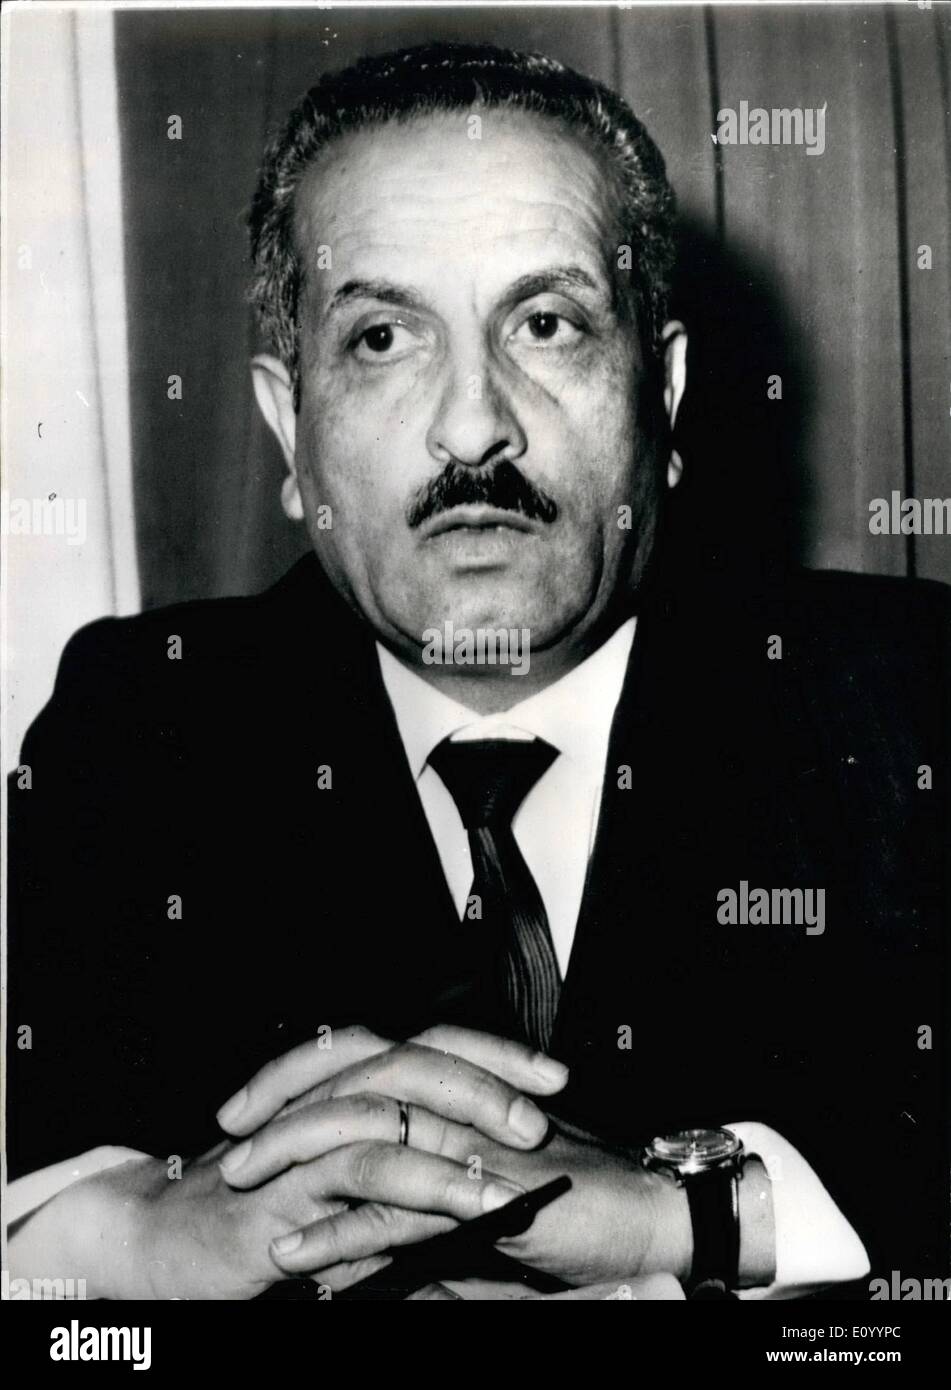 Le 12 décembre 1971 - NOUVEAU PREMIER MINISTRE DE JORDANIE. PHOTO : photo récente de M. Ahmad Lawzi, le nouveau Premier Ministre de la Jordanie, qui a succédé à Banque D'Images